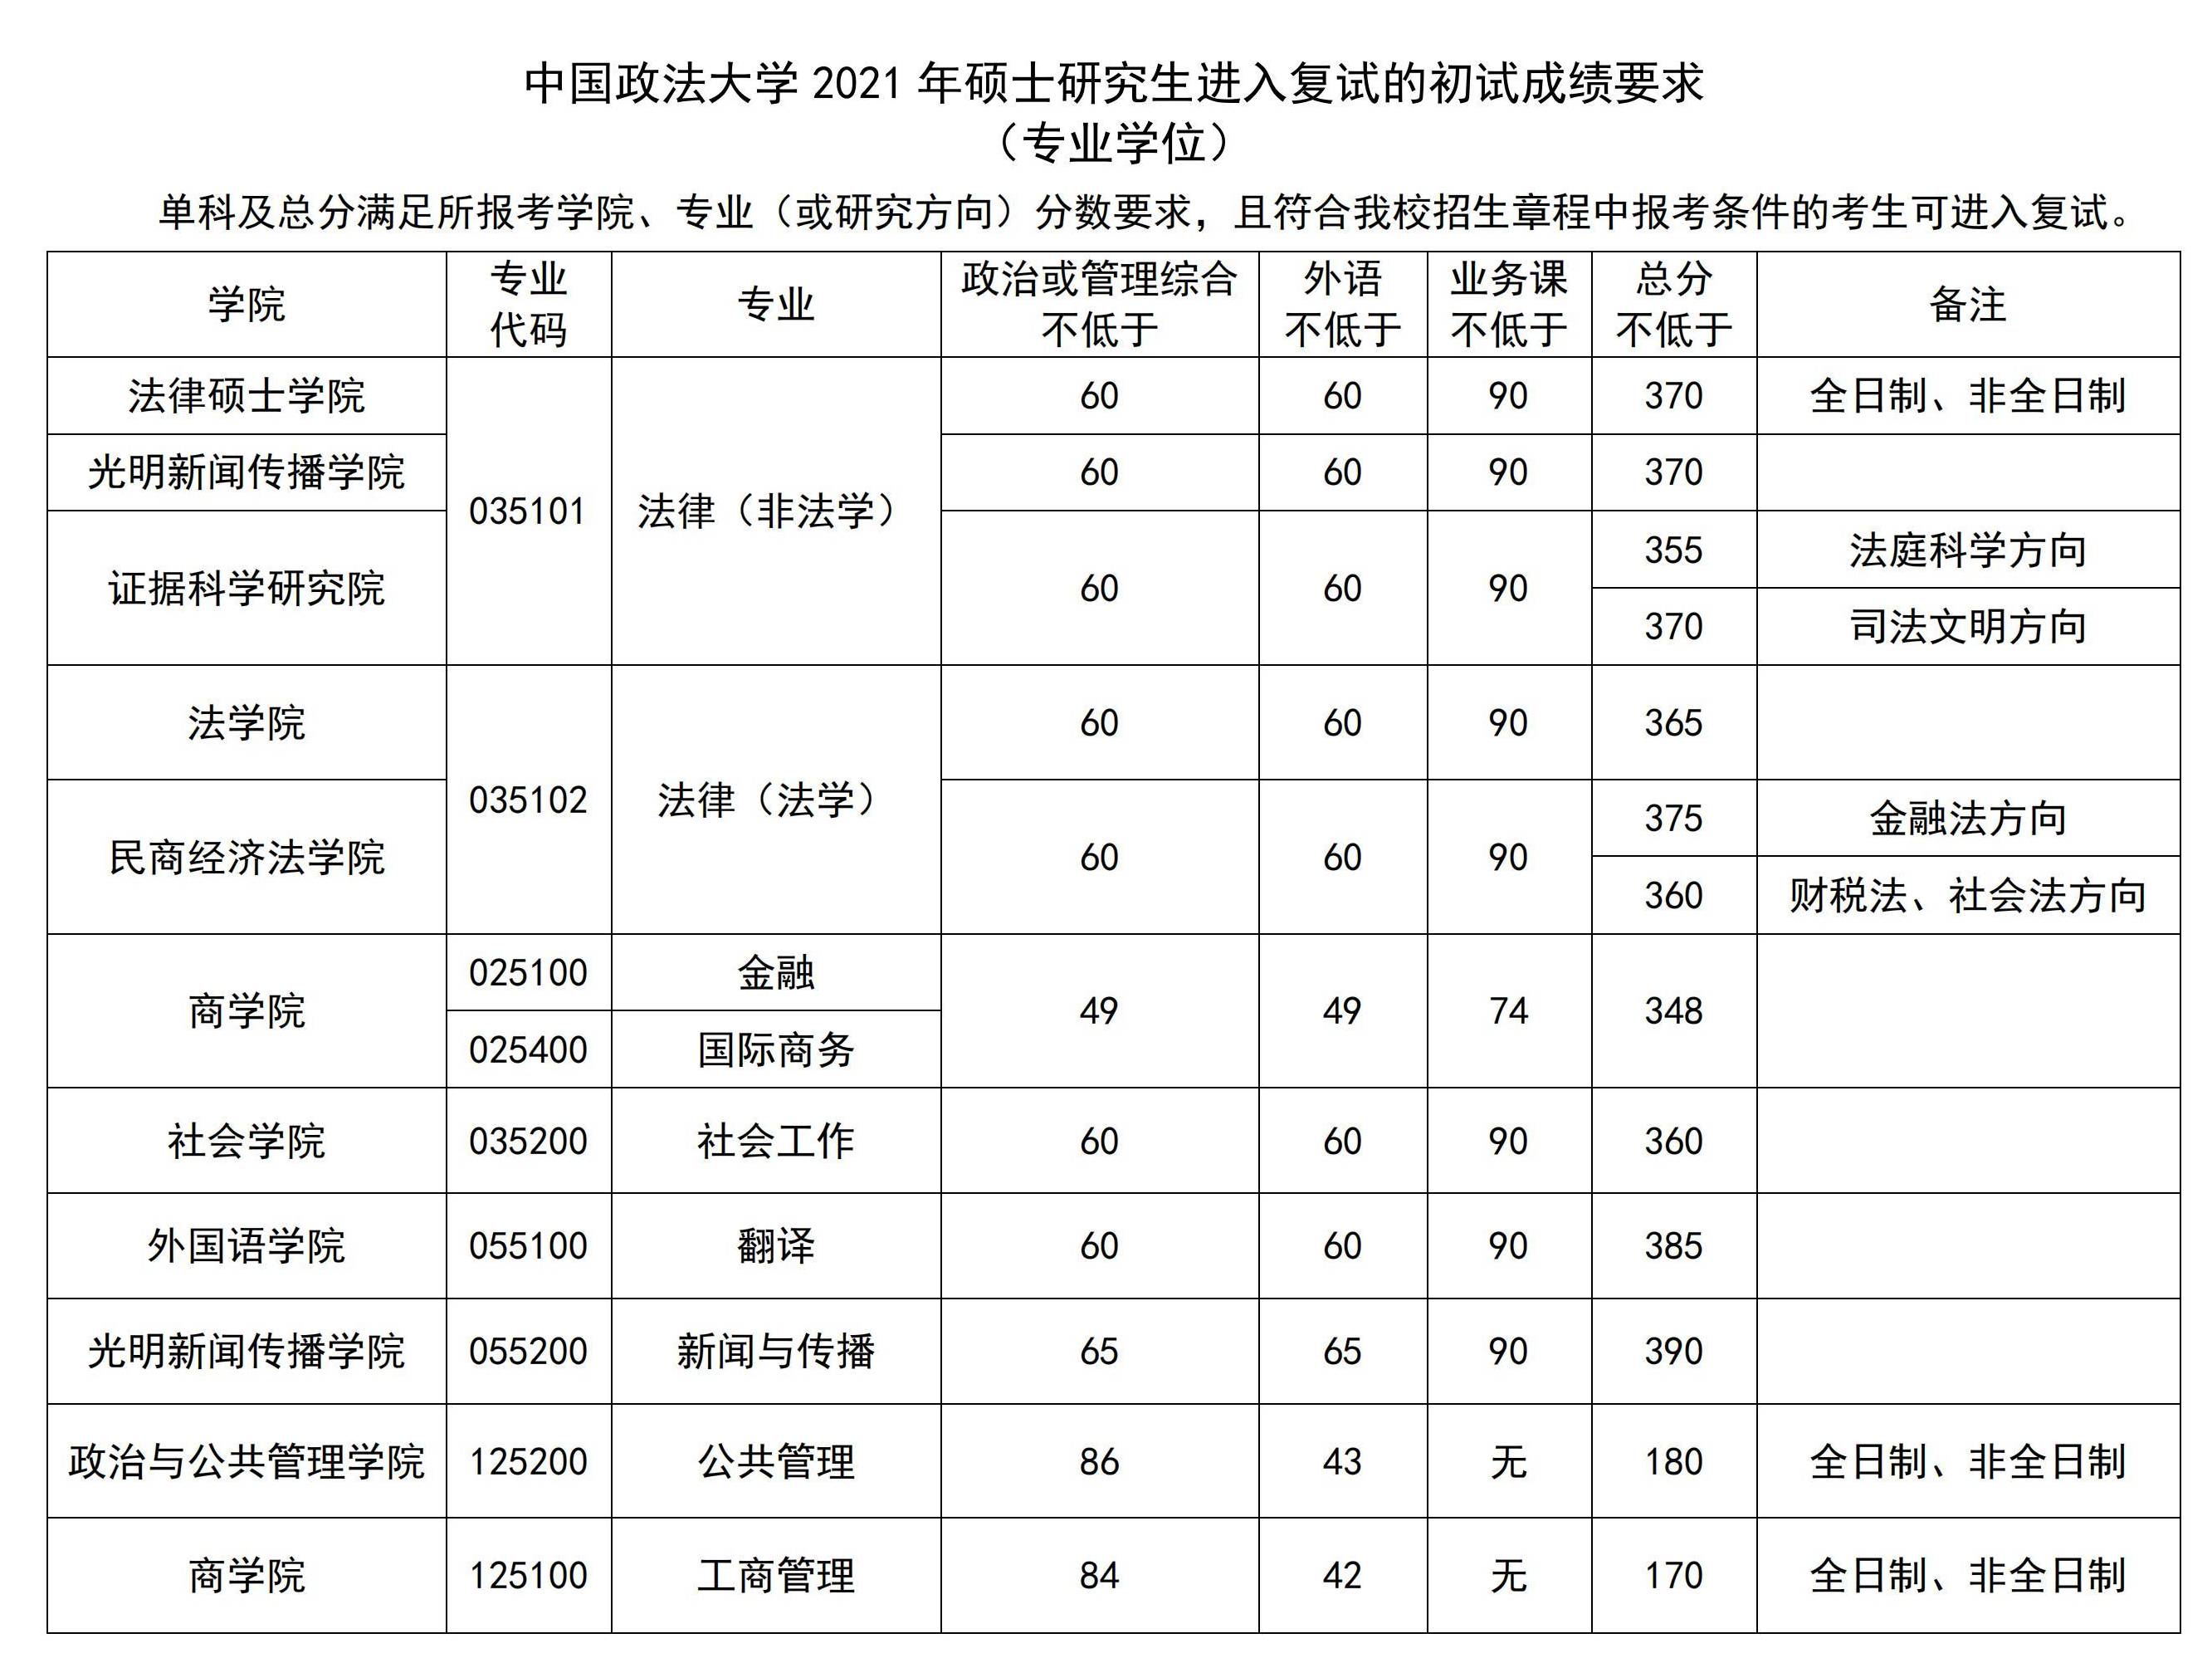 2021中国政法大学考研分数线